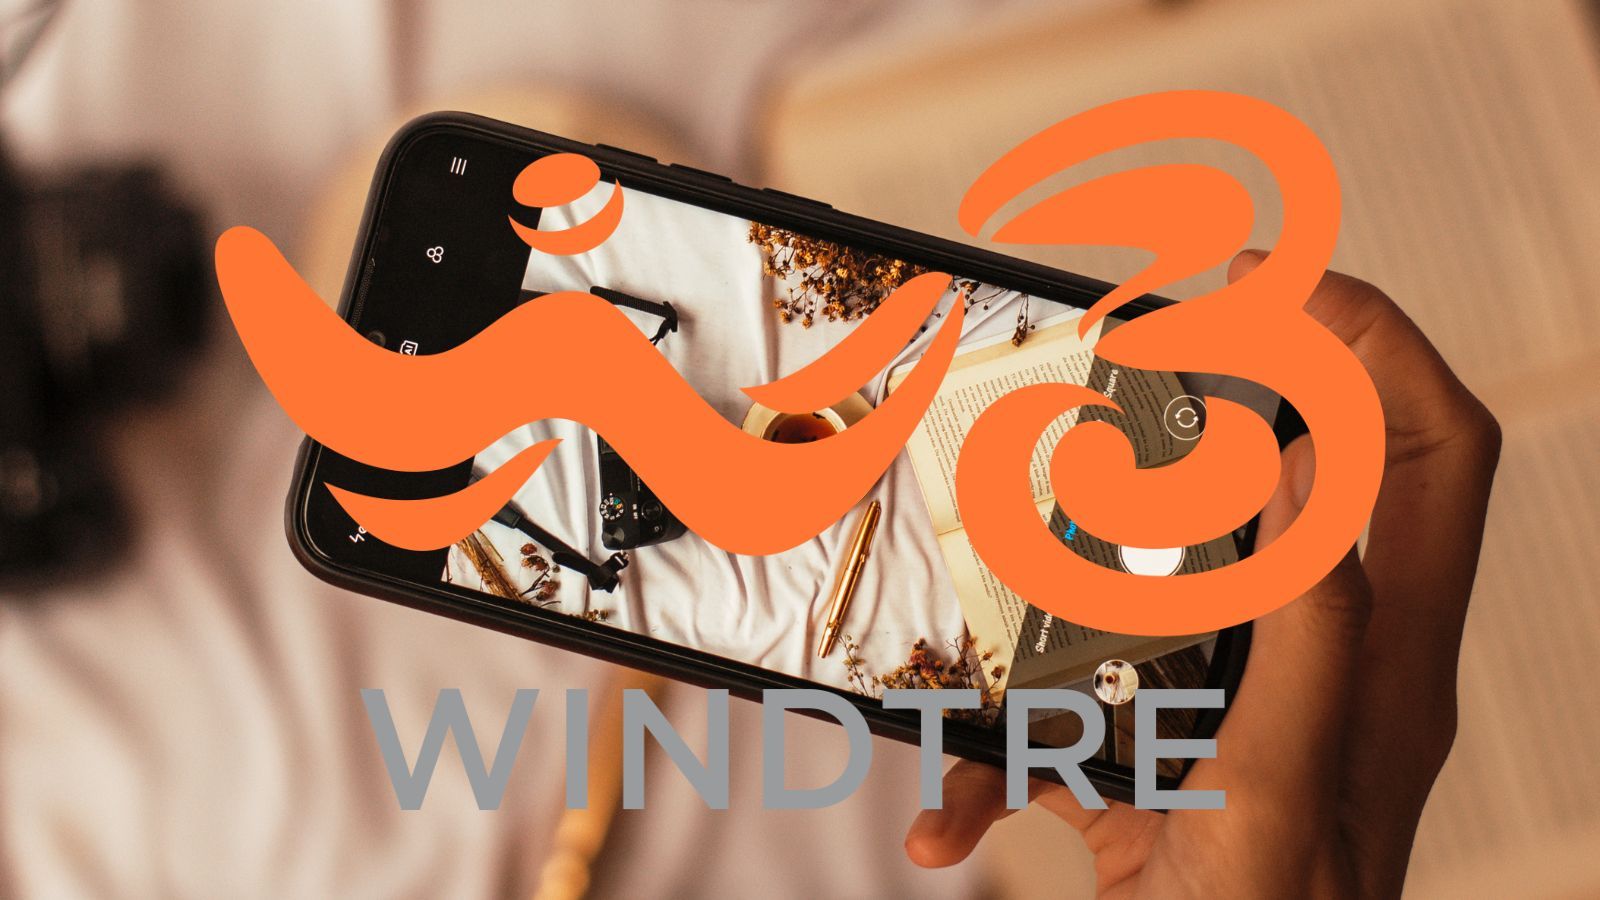 WindTre, offerta FOLLE con 100GB e 5G incluso a basso prezzo